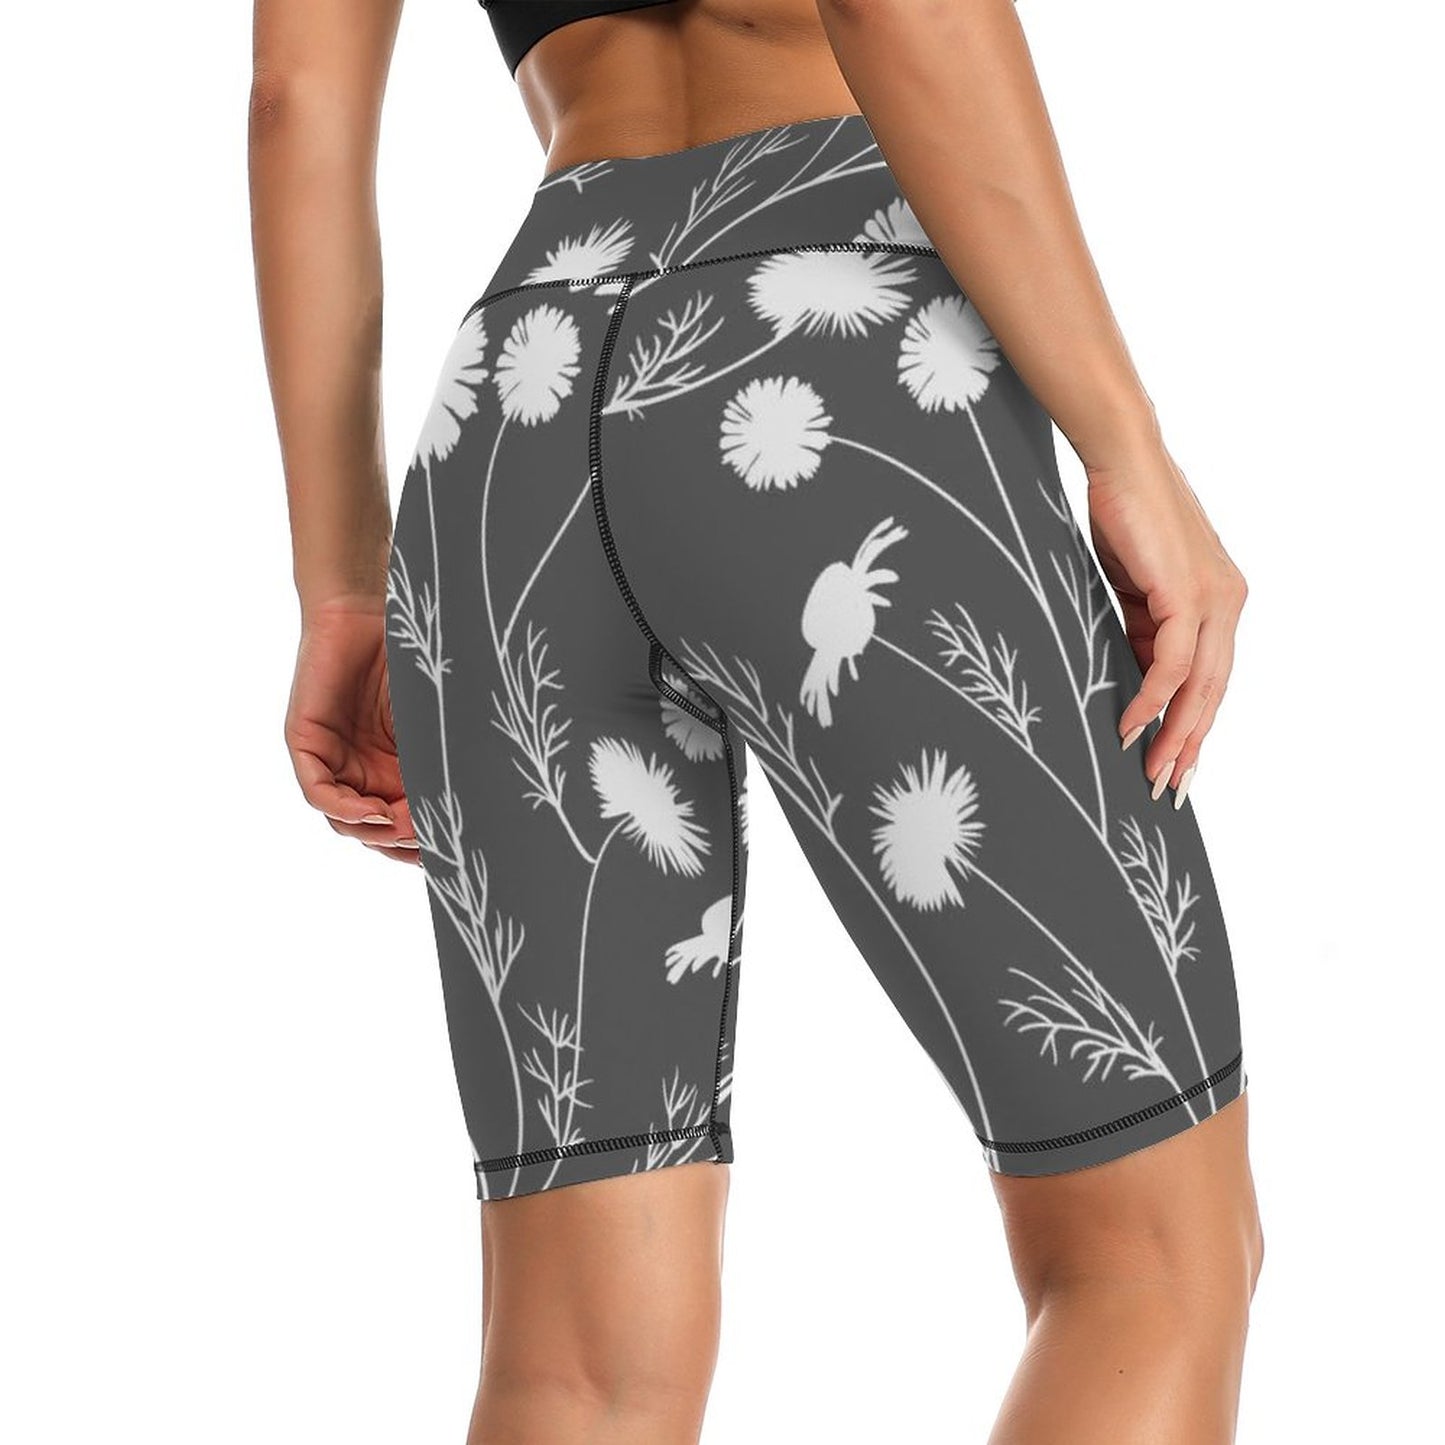 Online Customize Sportswear for Women Yoga Pants Flowers